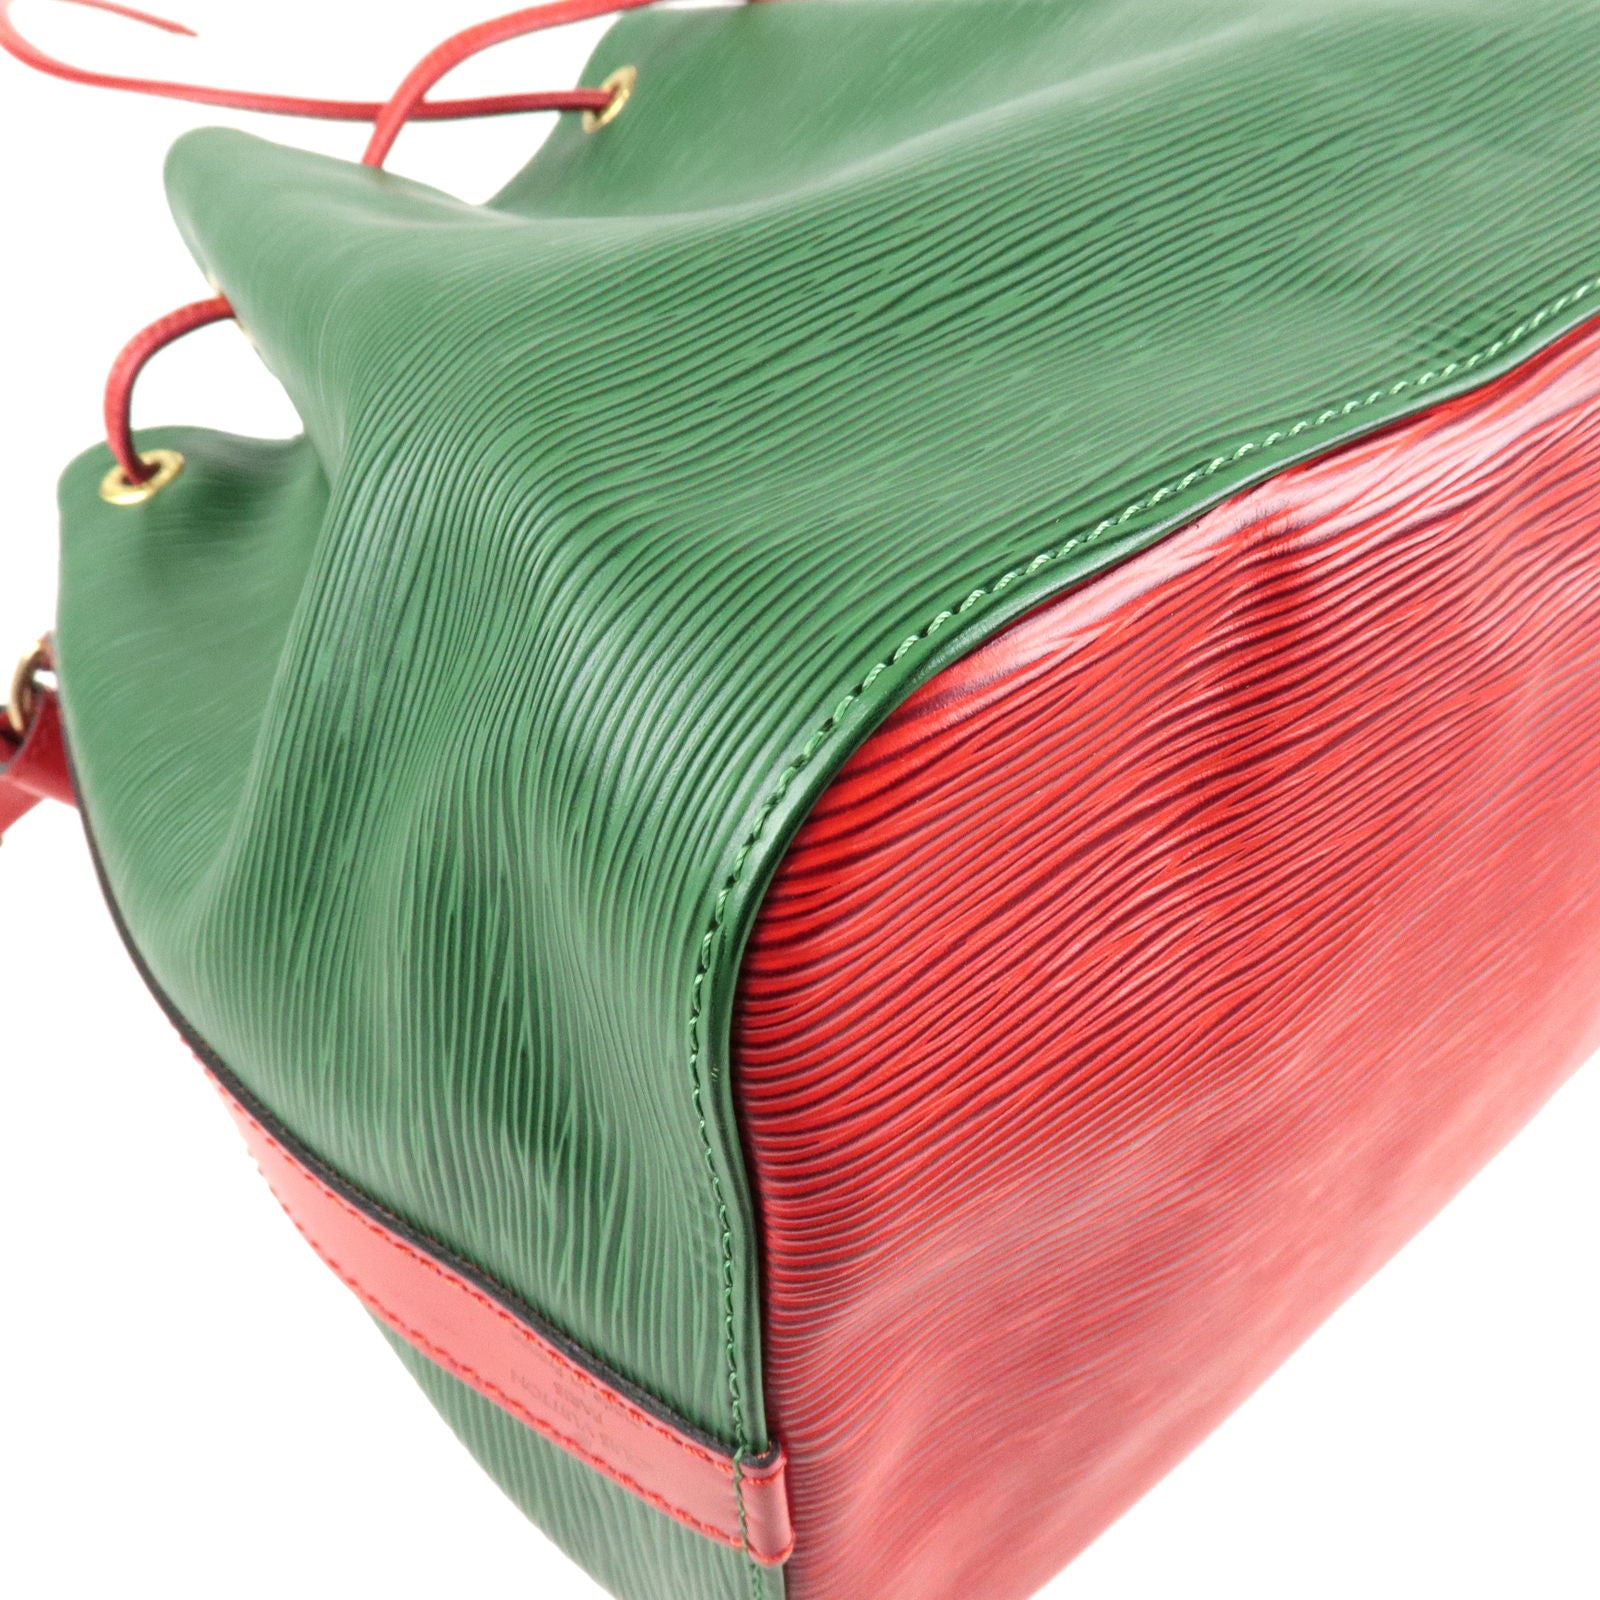 LOUIS VUITTON Noe Large Green Epi Leather Vintage Shoulder Bag